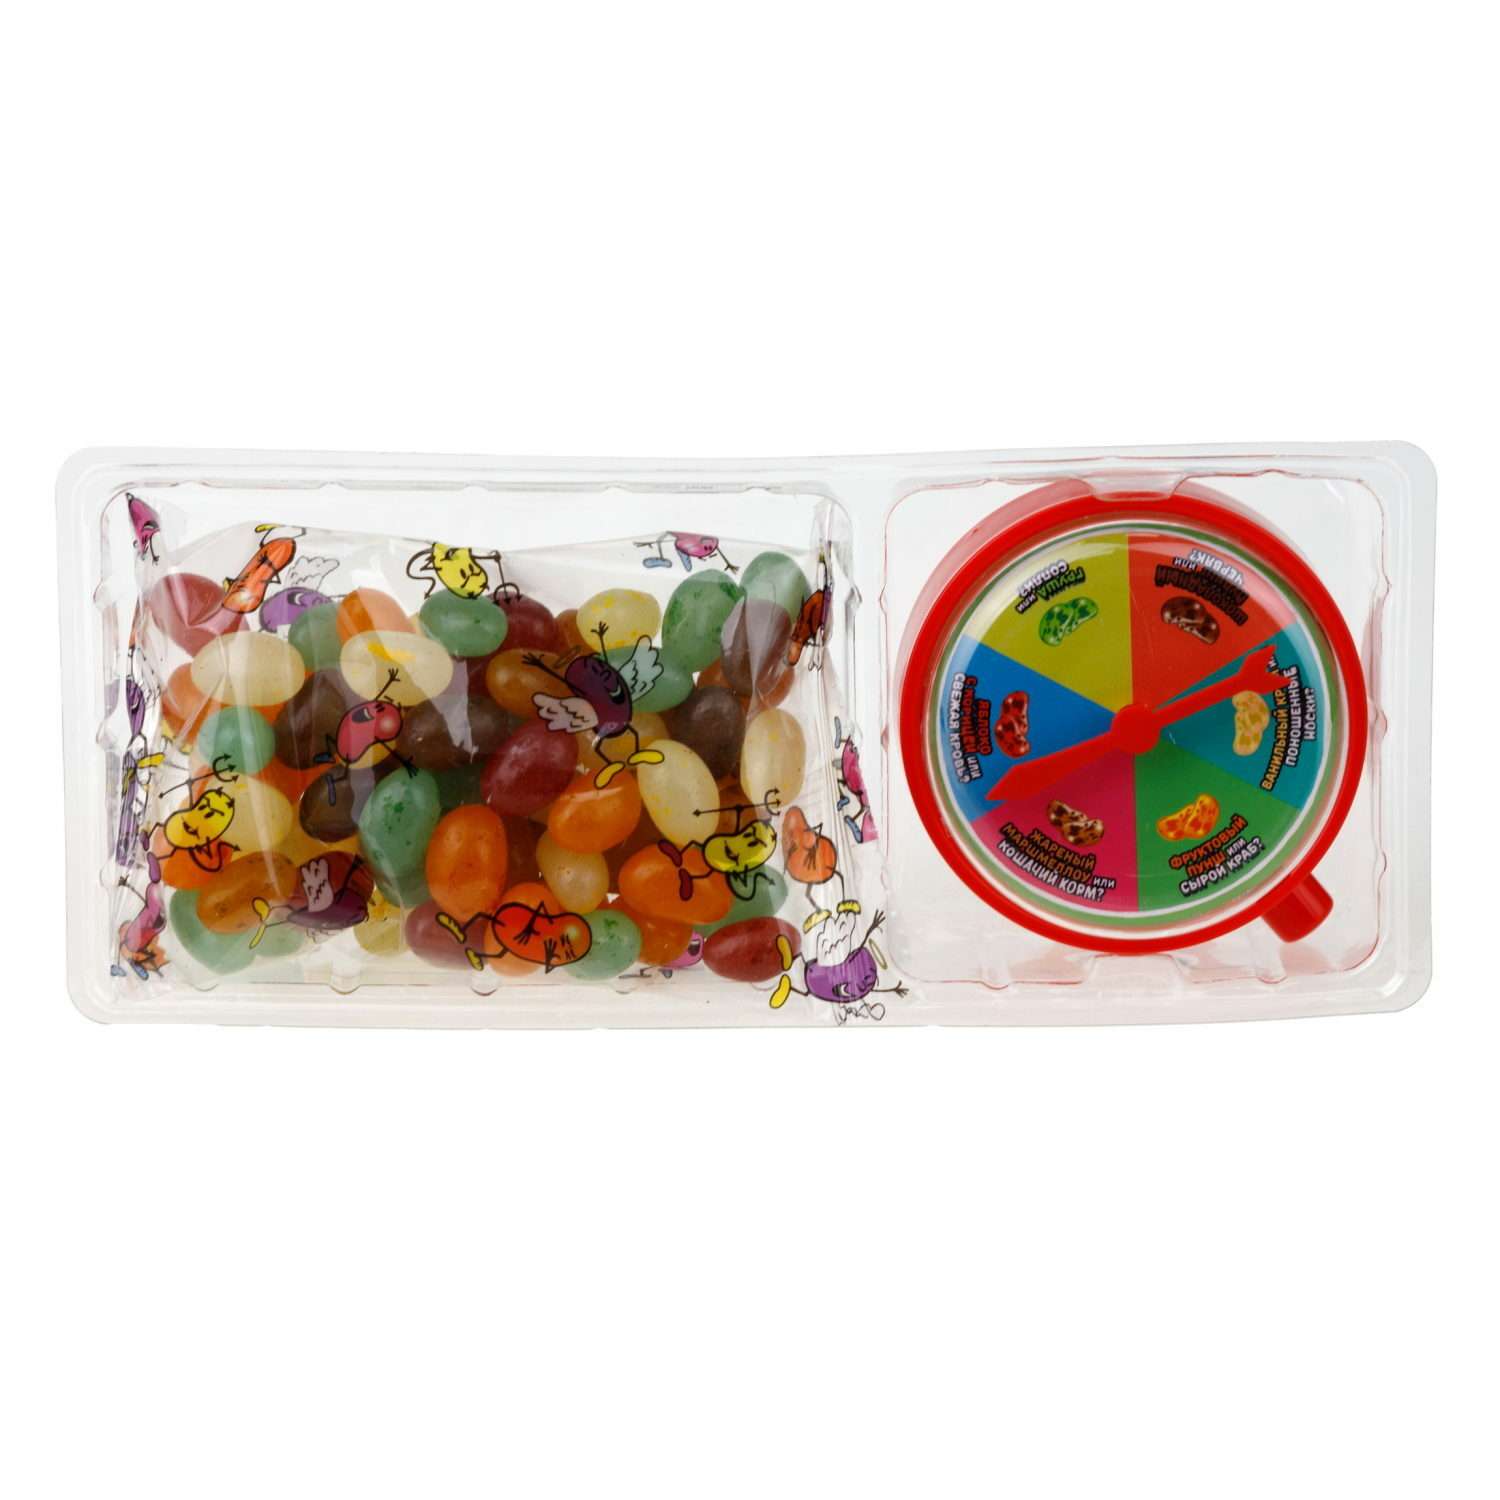 Необычные конфеты Мармеладские Игры с приколом острые и сладкие розыгрыш 12 вкусов 1 упаковка - фото 7